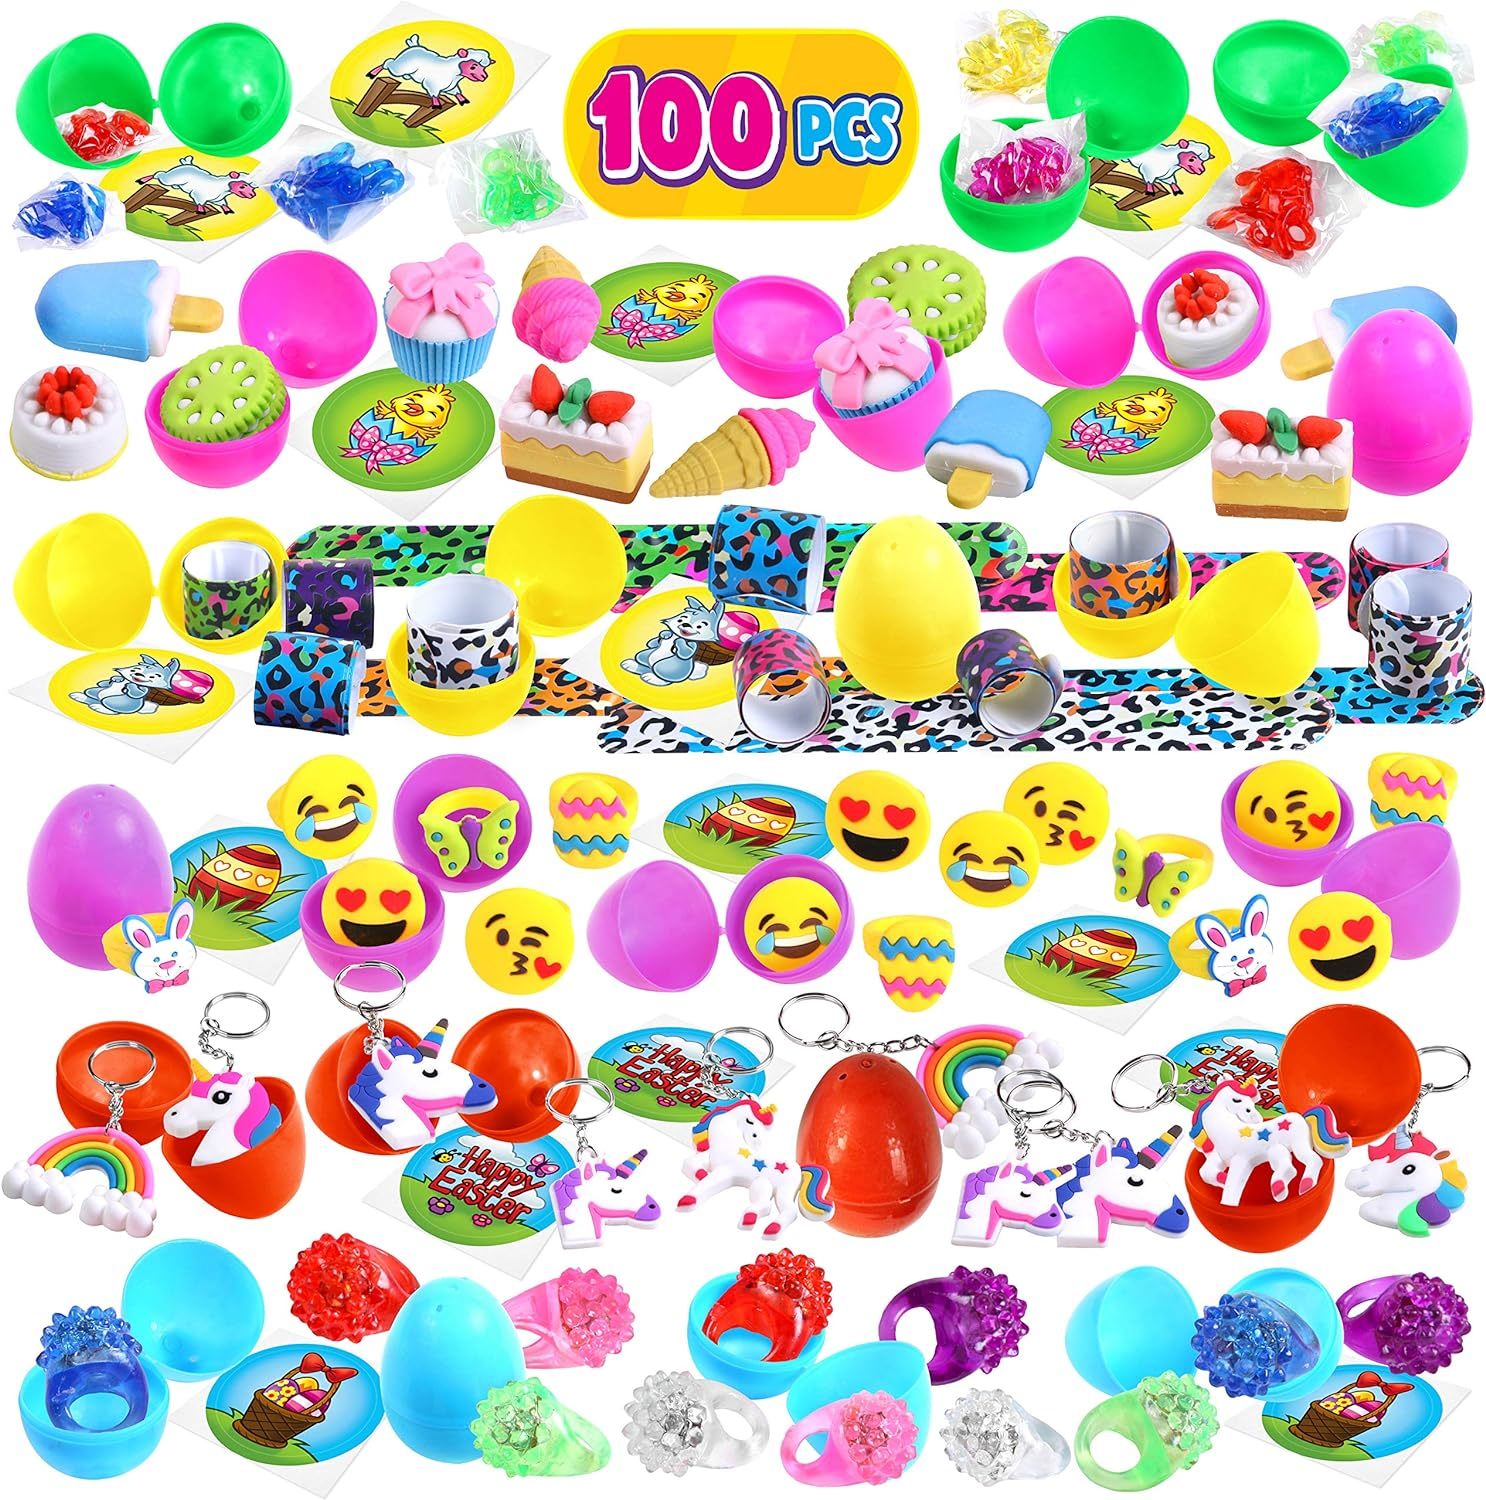 Primary image for Giraffe 100 Pack Premium Prefilled Easter Eggs Toy Filled Bulk Plastic Eggs for 